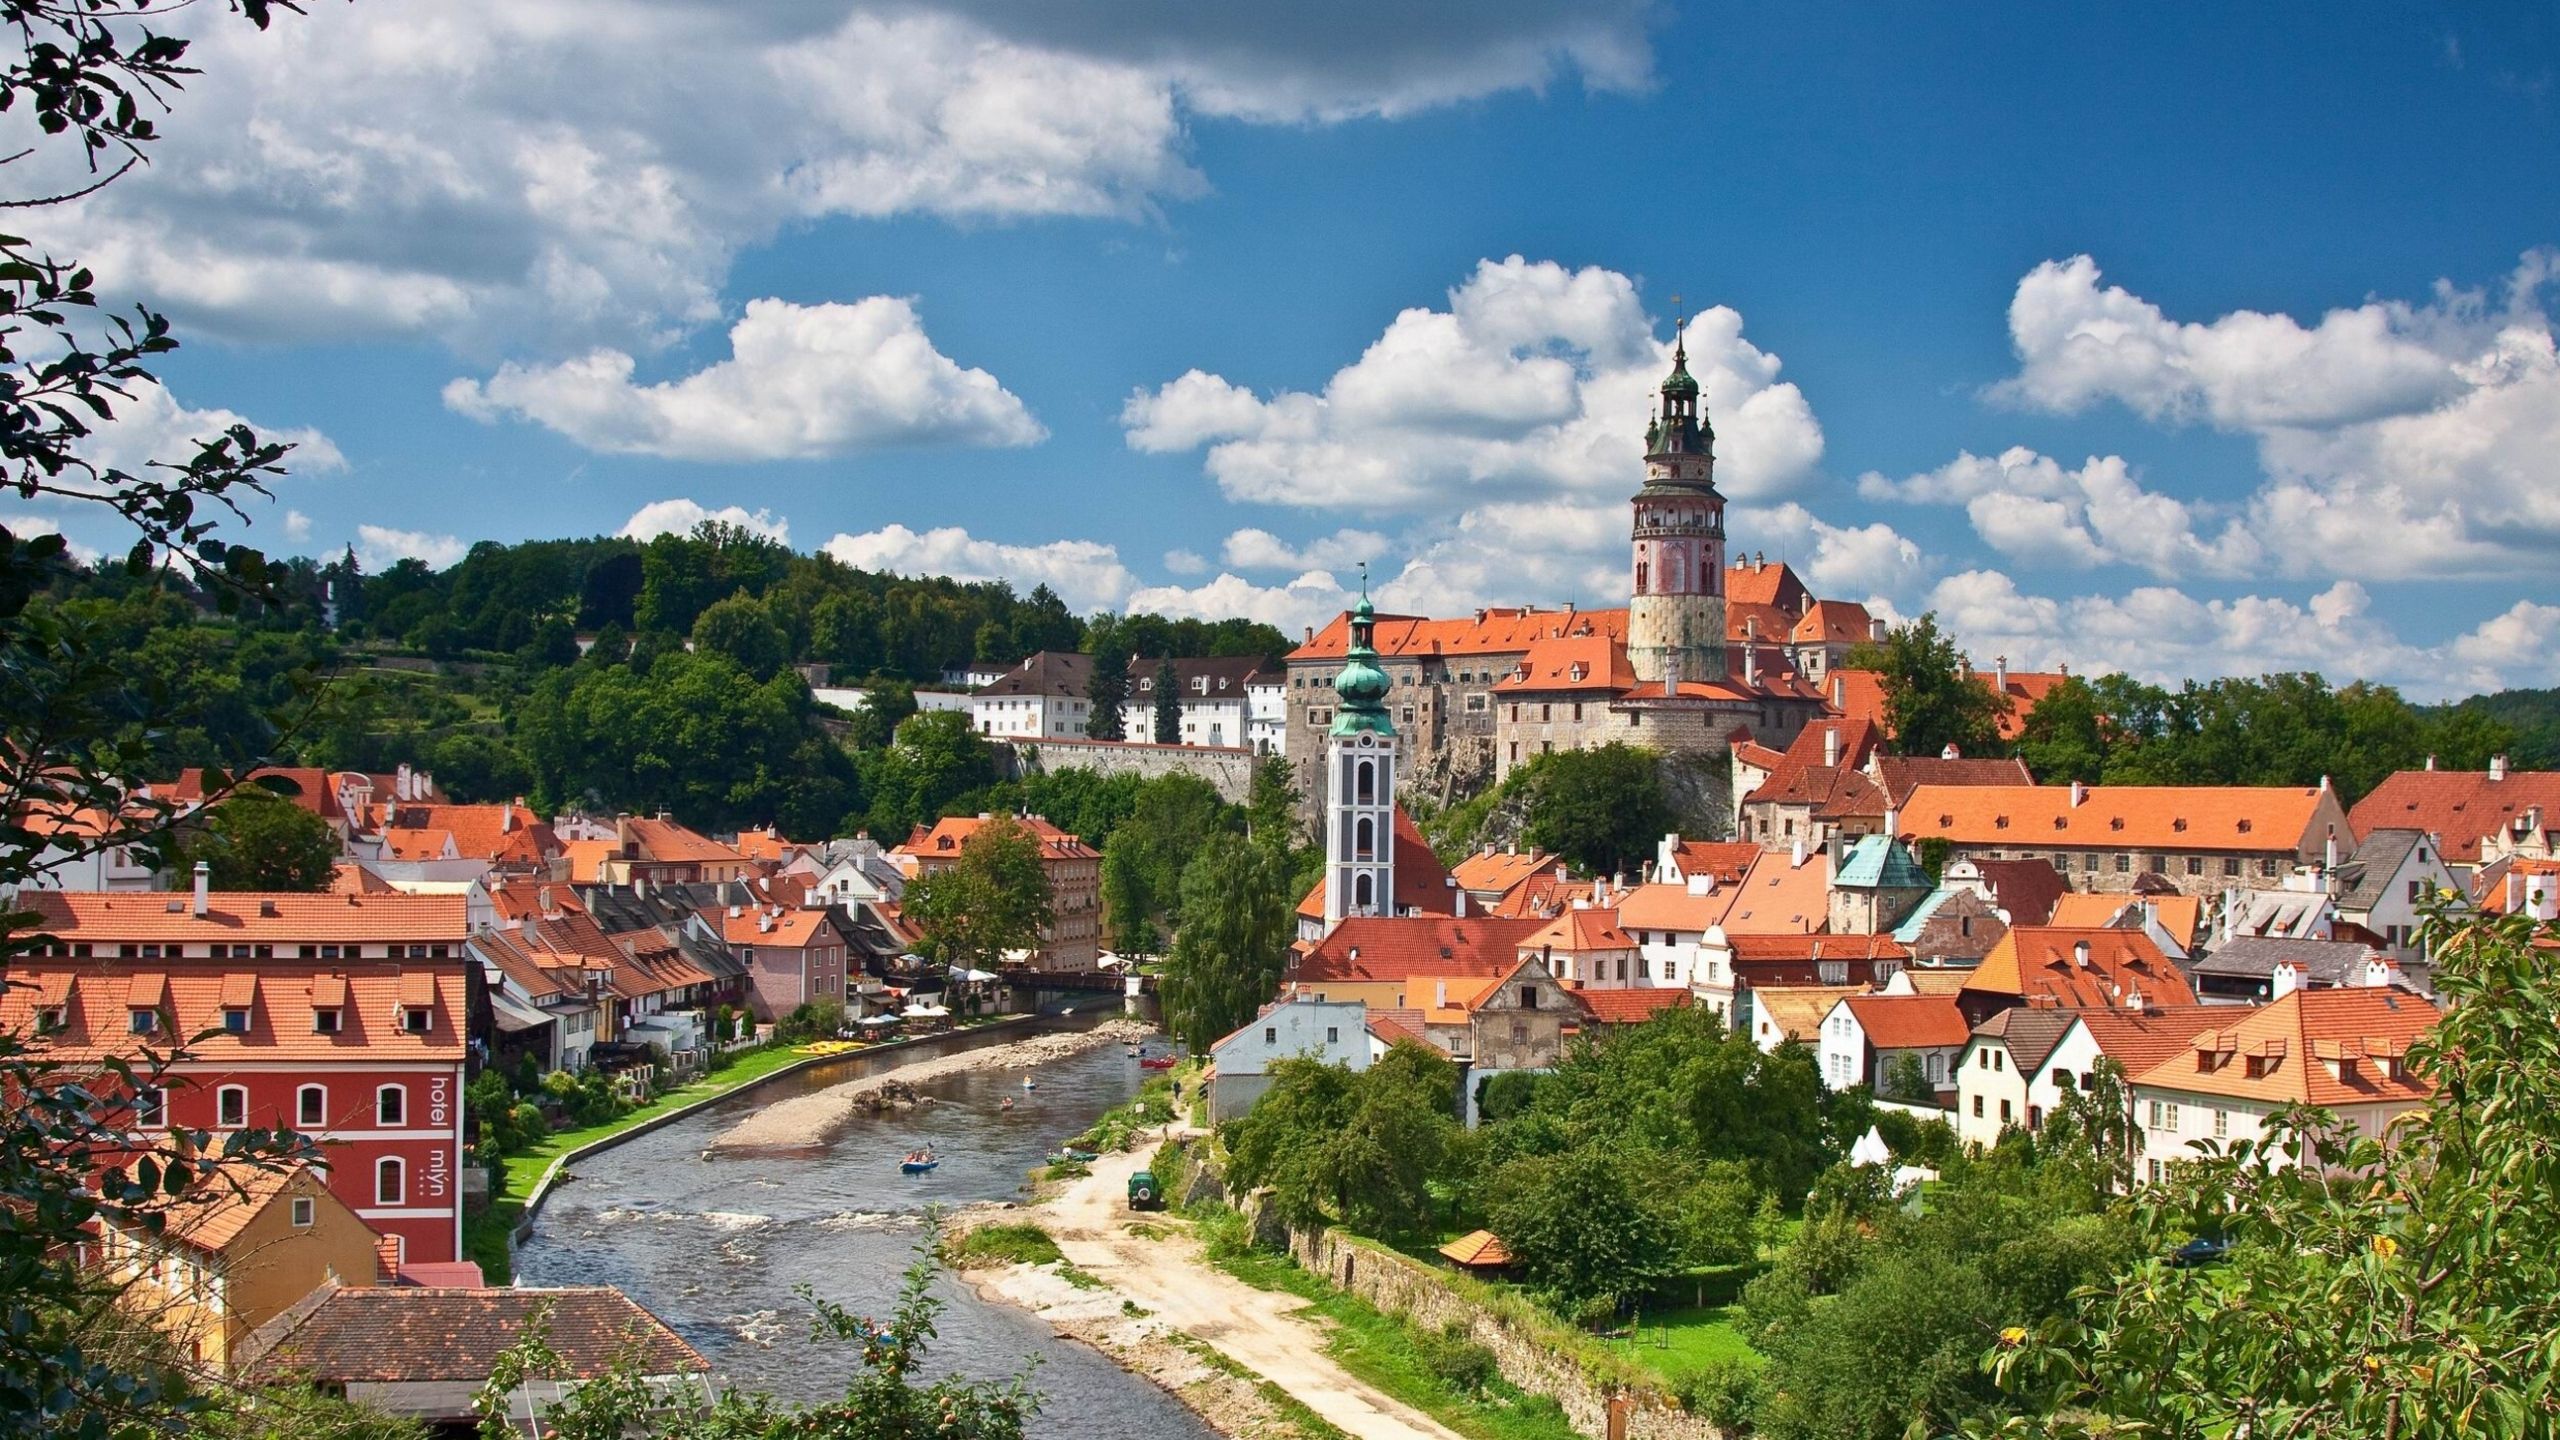 Czech Republic cities, vltava, chesky-krumlov, panorama Free Stock Photos